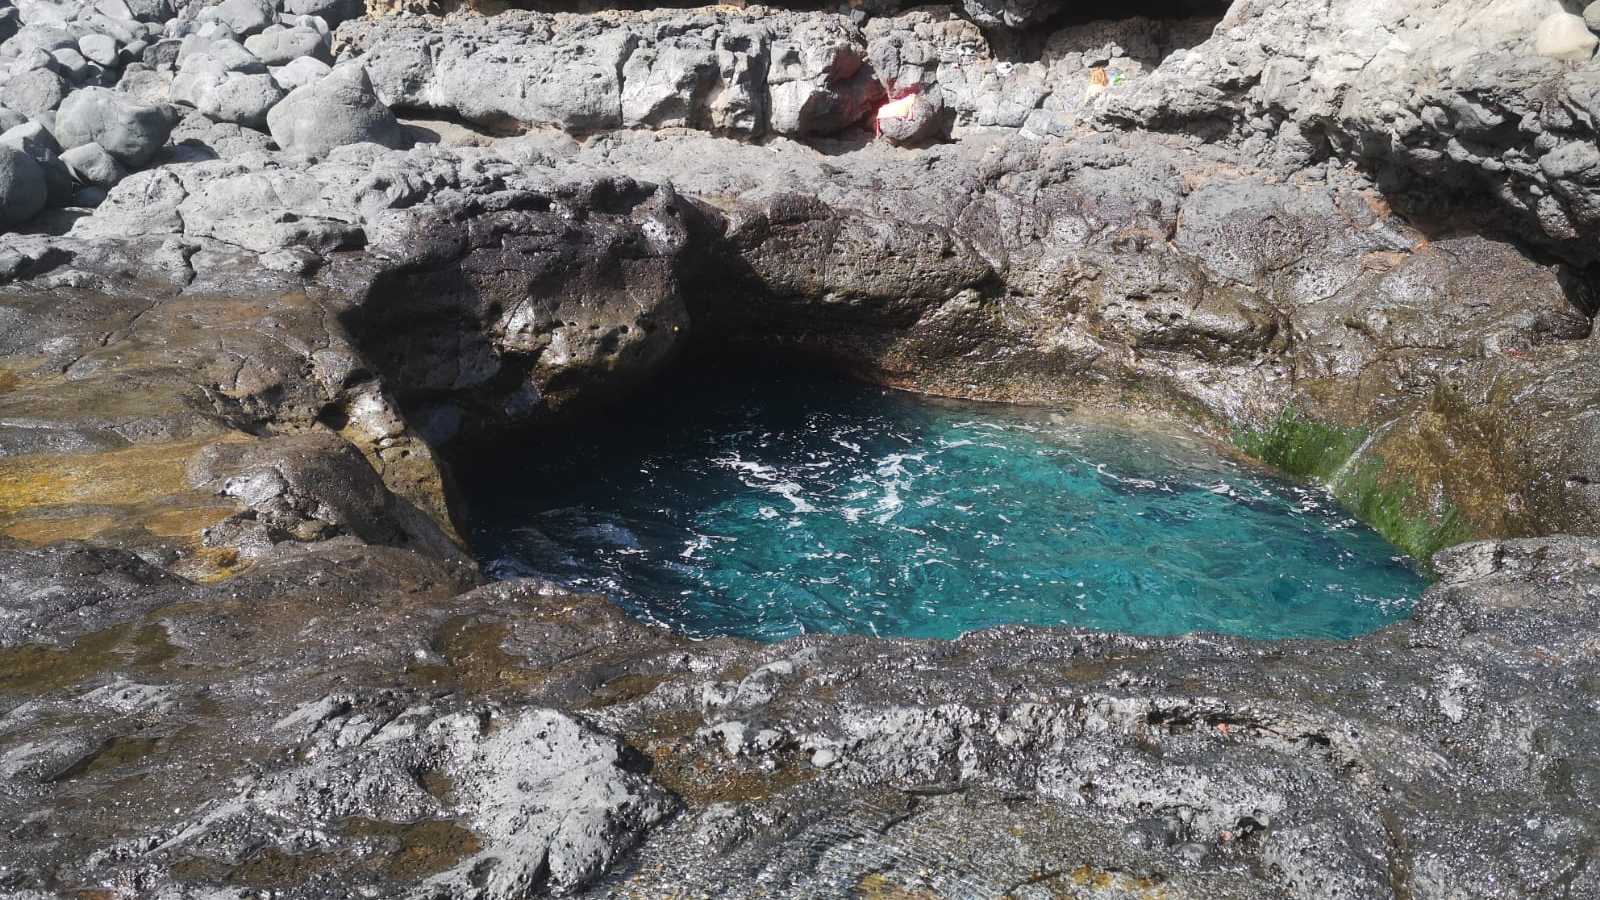 Típica piscina natural, también llamada "charco", de la costa norte de Tenerife